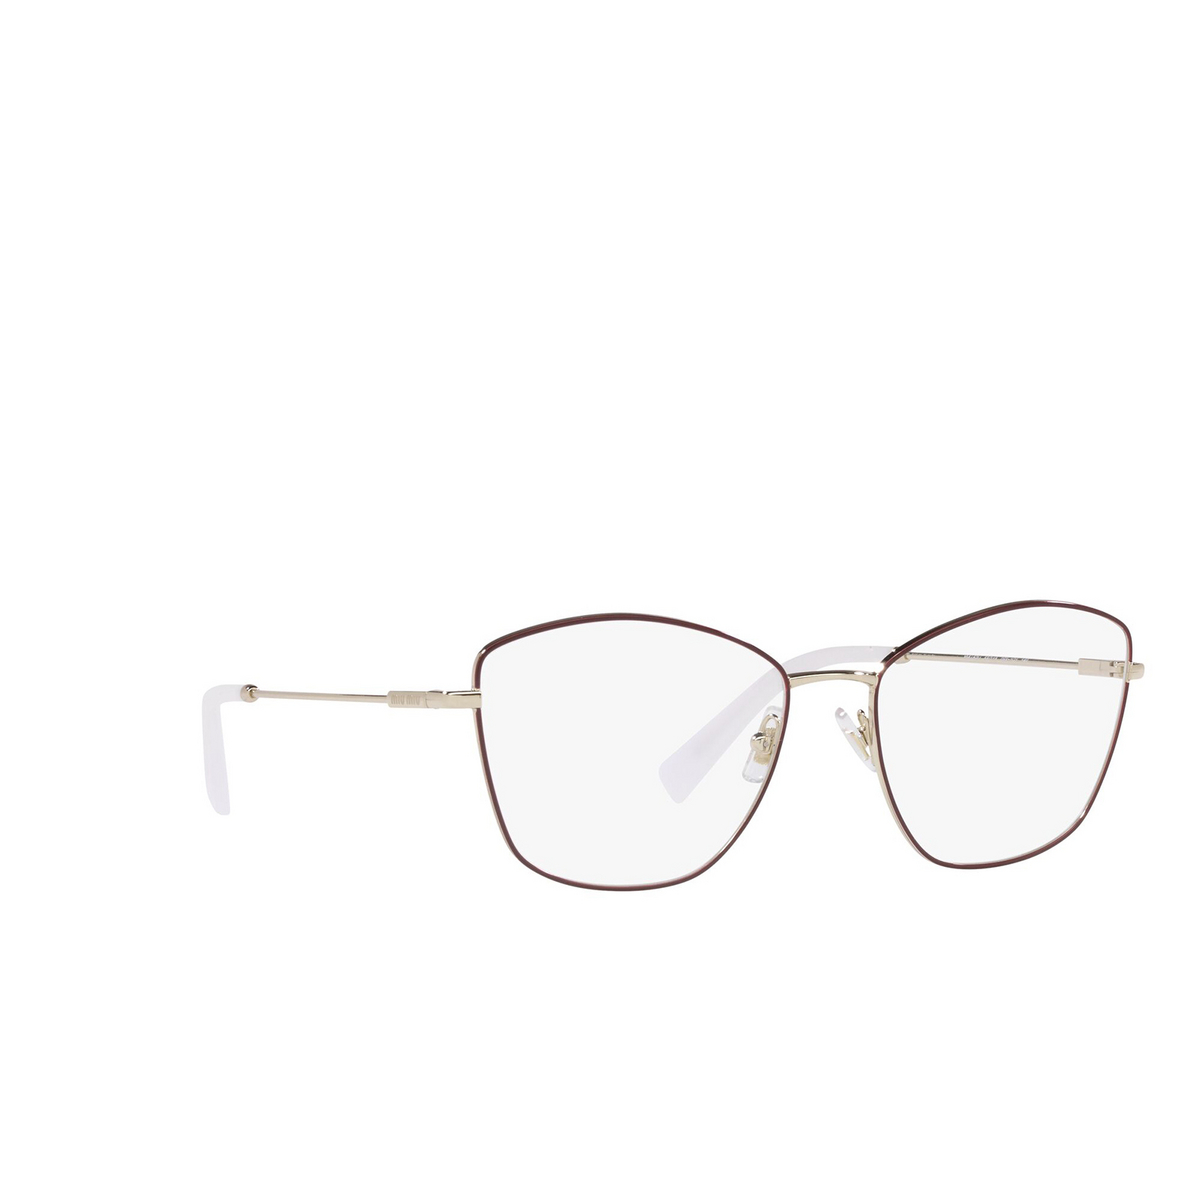 Miu Miu® Butterfly Eyeglasses: MU 52UV color Bordeaux 09X1O1 - three-quarters view.